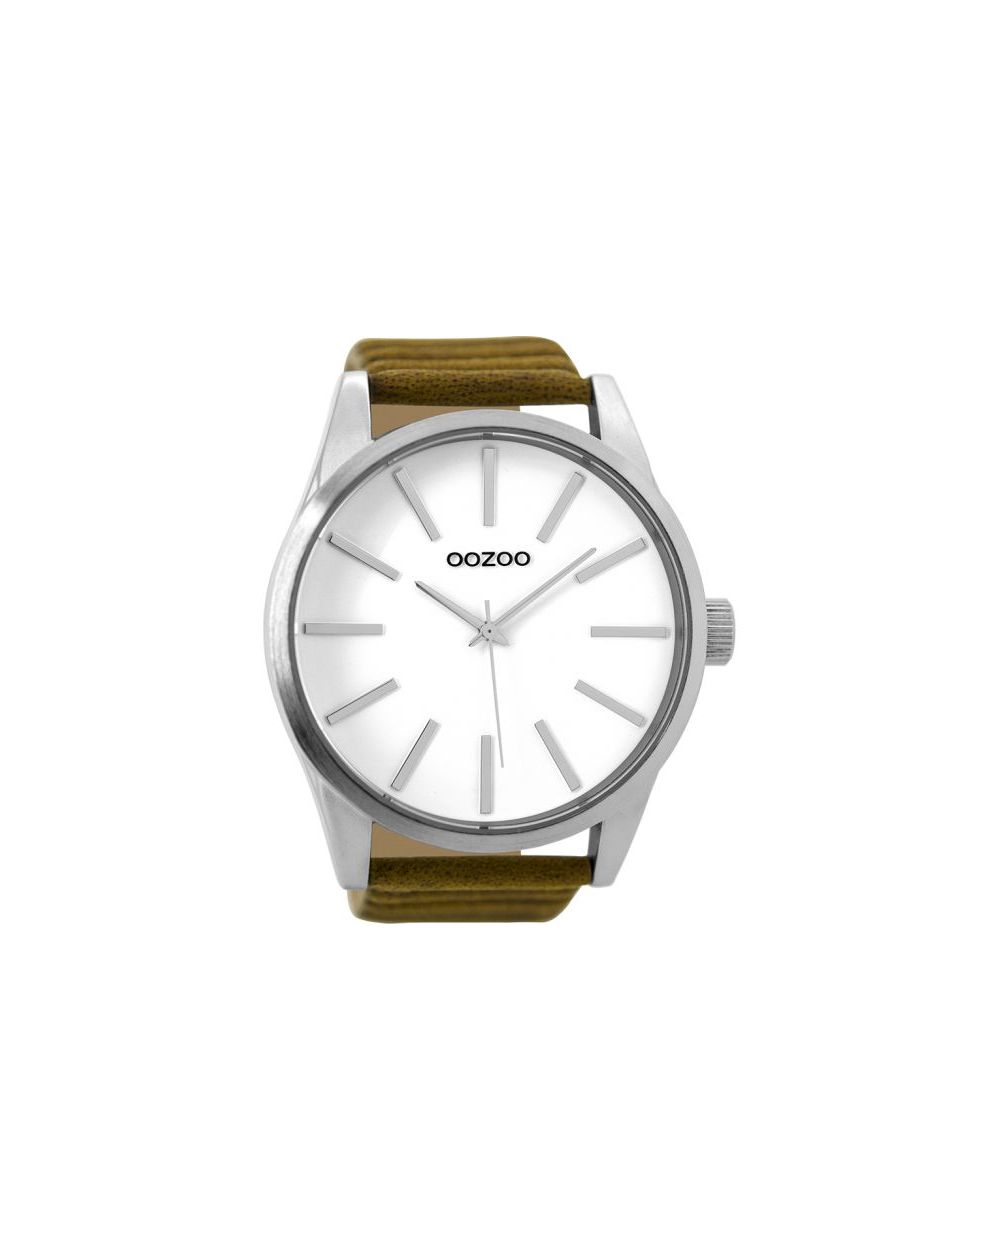 Oozoo montre/watch/horloge C9410